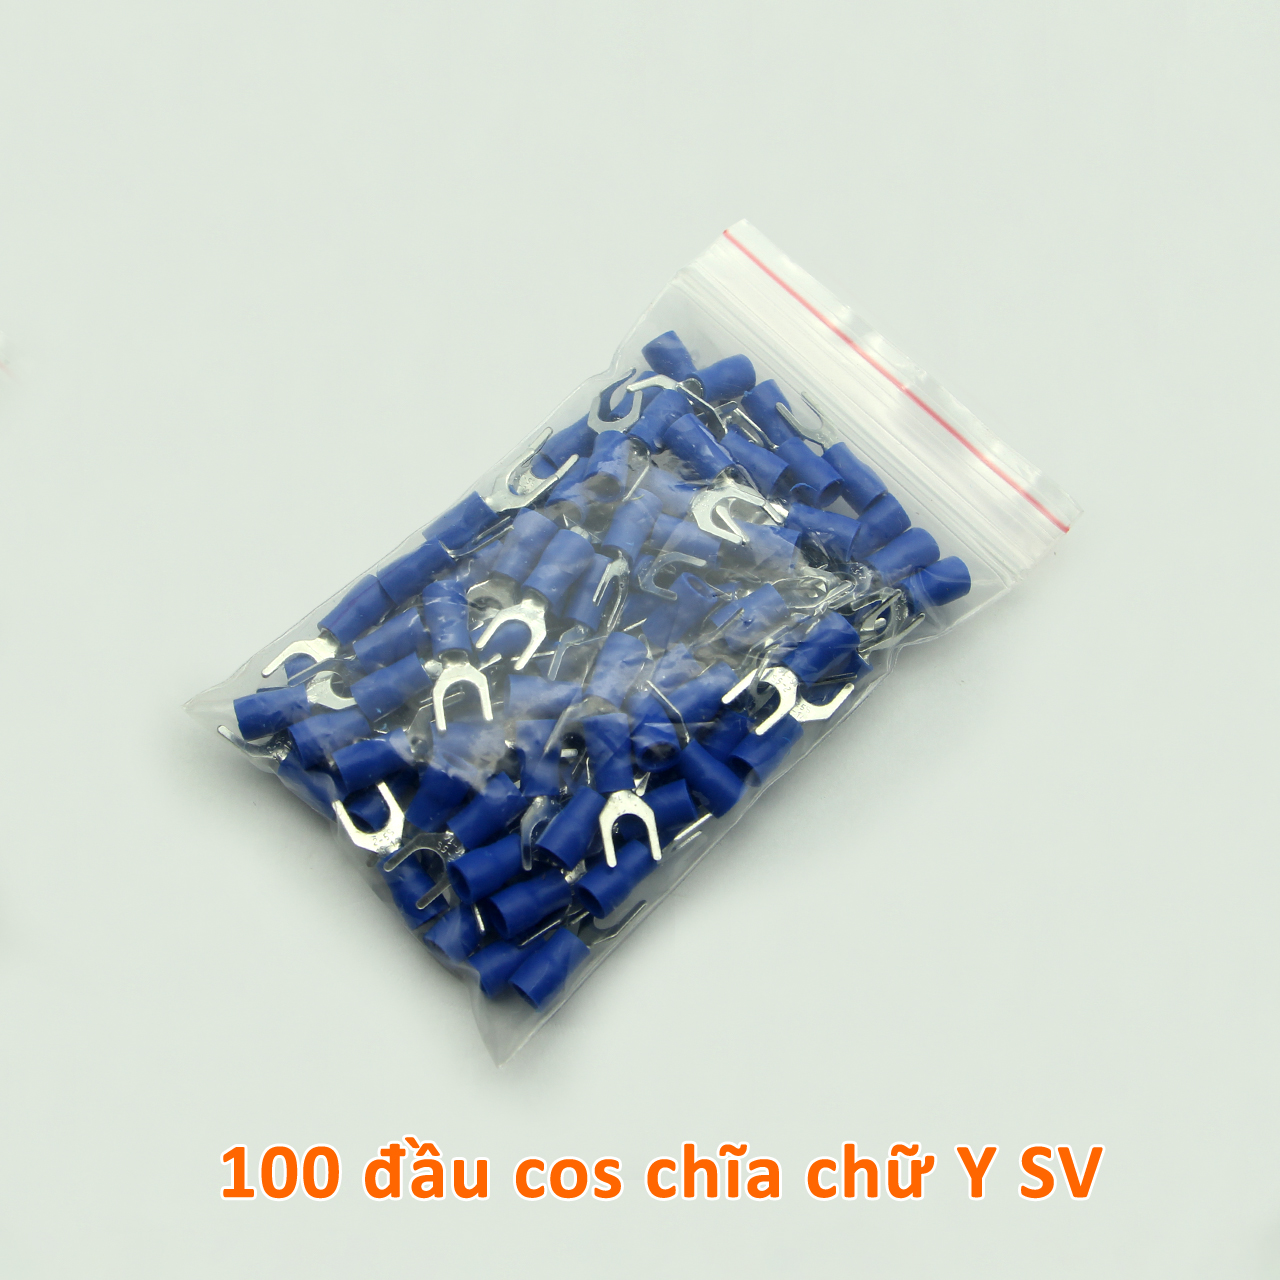 Túi 100 đầu cos chĩa chữ Y SV 2-5 bọc nhựa xanh